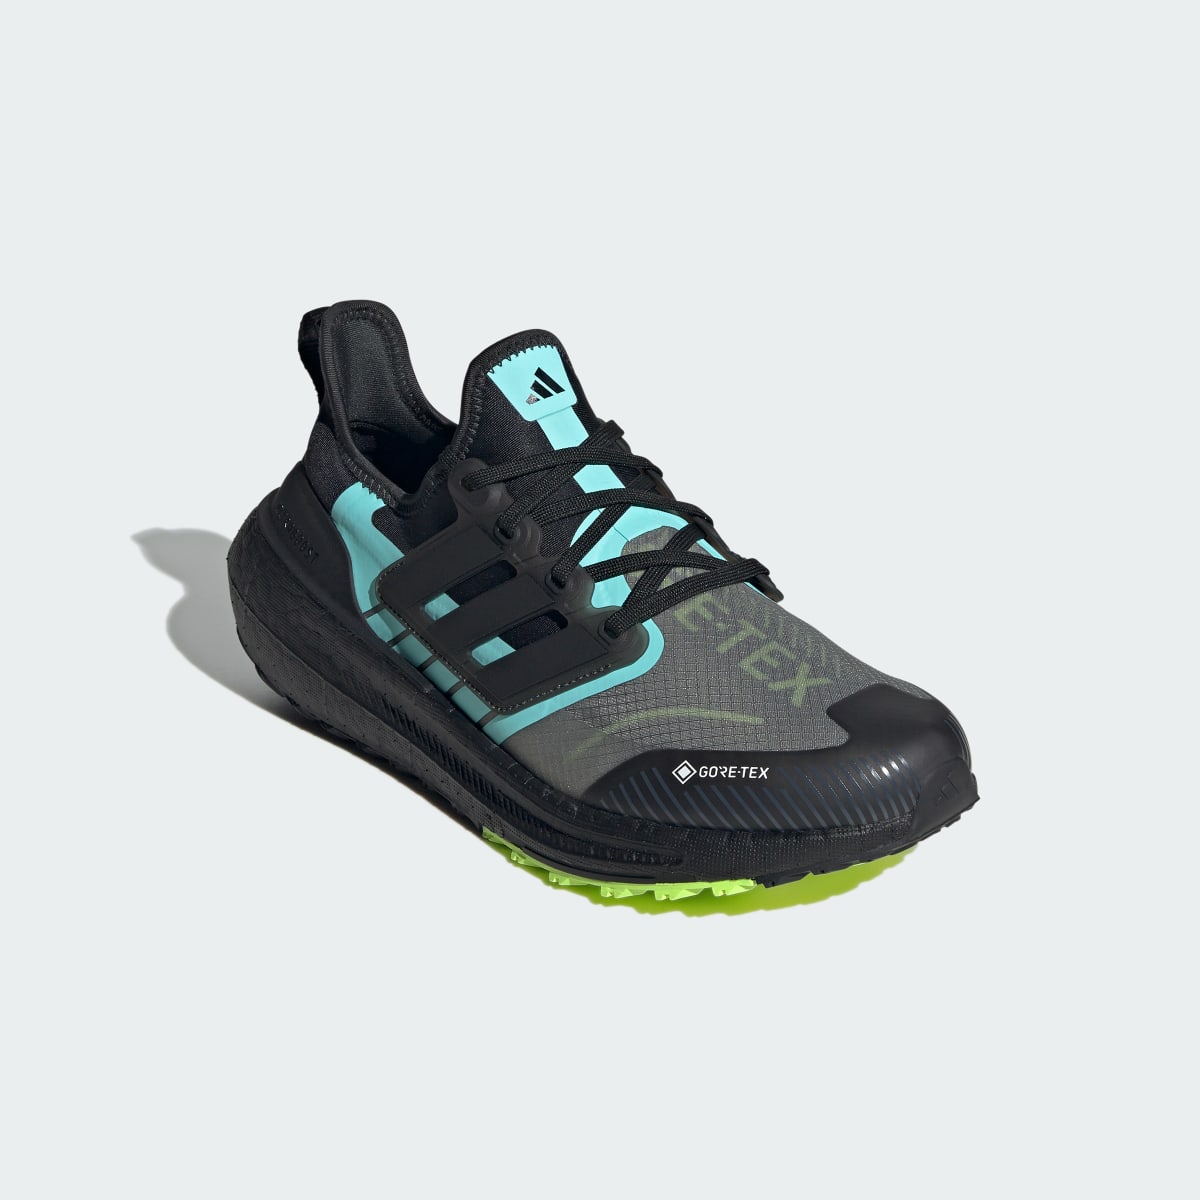 Adidas Ultraboost Light GORE-TEX Running Shoes. 5